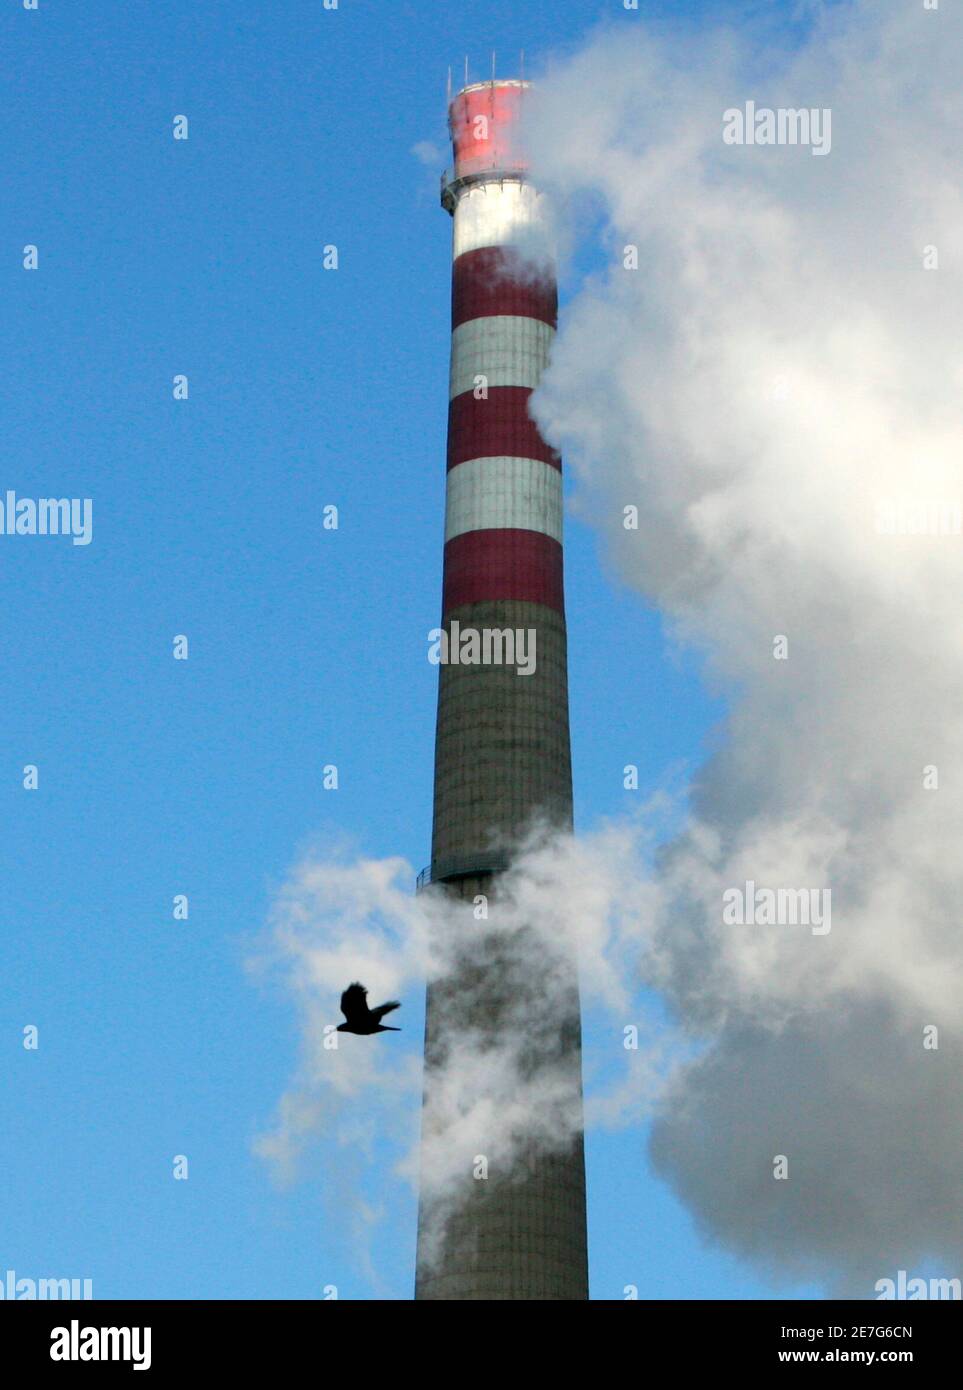 Ein Vogel fliegt vorbei an einem Schornstein eines thermischen Kraftwerkes in Peking 3. Dezember 2007. Rund 190 Nationen trafen sich in Bali am Montag sucht einen Durchbruch, einen neuen globalen Pakt zur Bekämpfung des Klimawandels bis 2009 abzuwenden, Dürren, Hitzewellen und steigende Meere, die die Armen am härtesten getroffen werden. REUTERS/Jason Lee (CHINA) Stockfoto